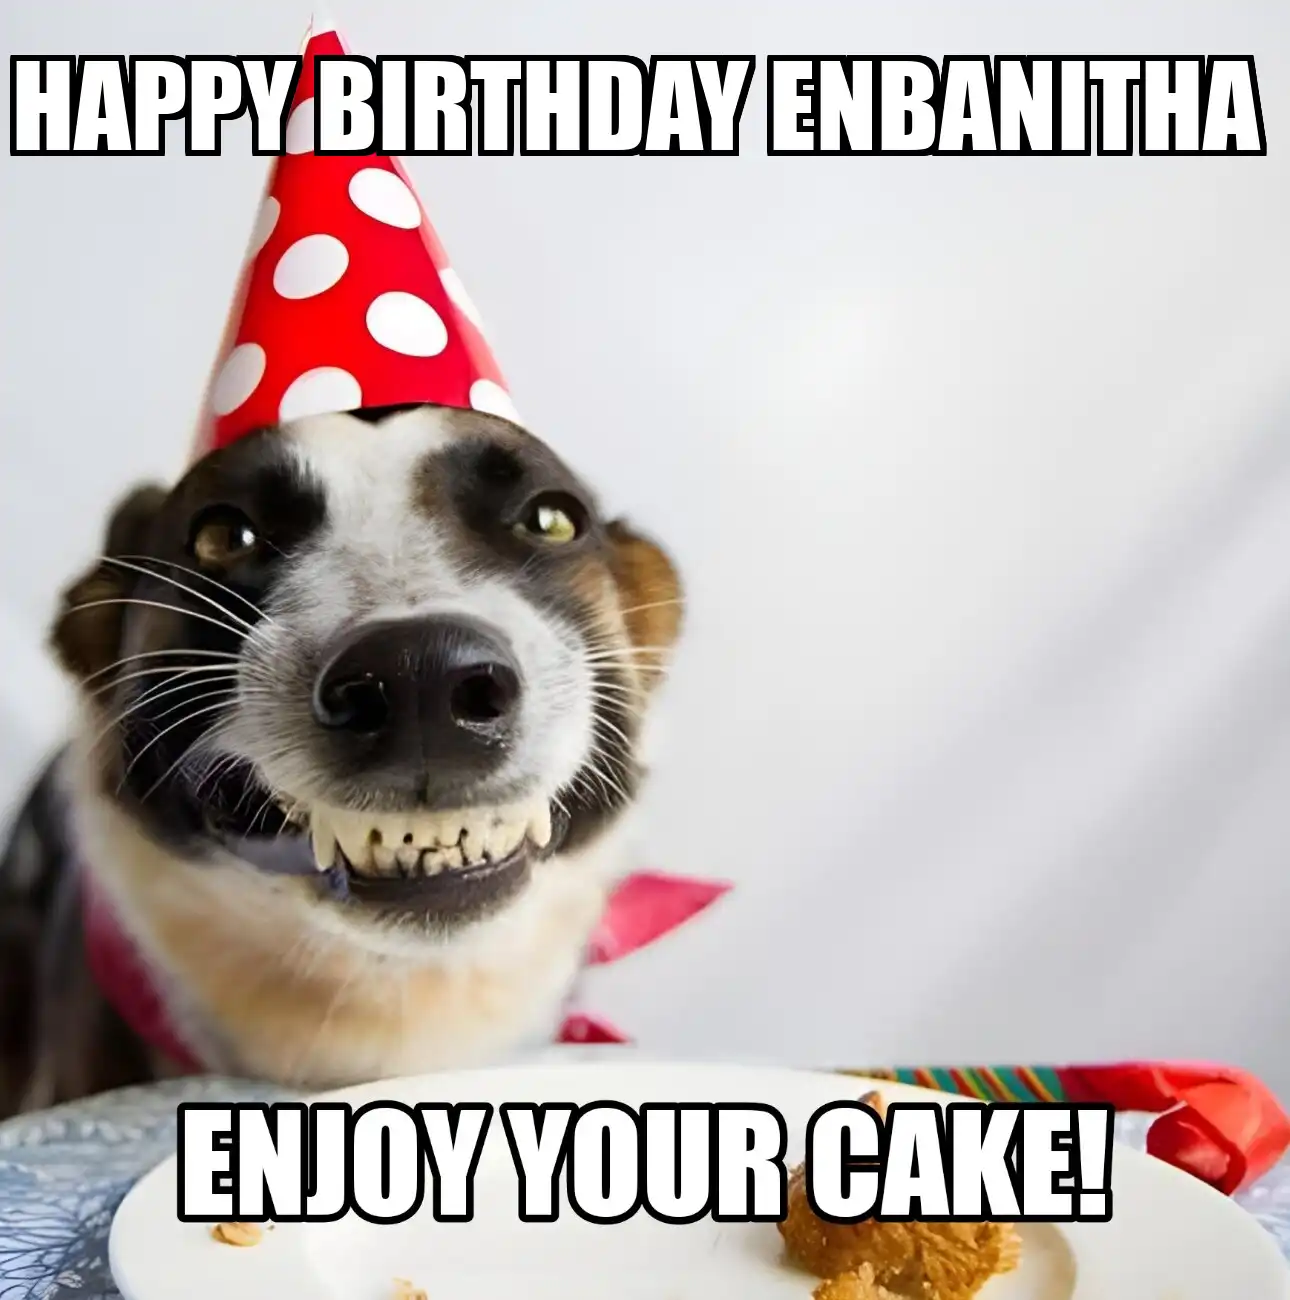 Happy Birthday Enbanitha Enjoy Your Cake Dog Meme